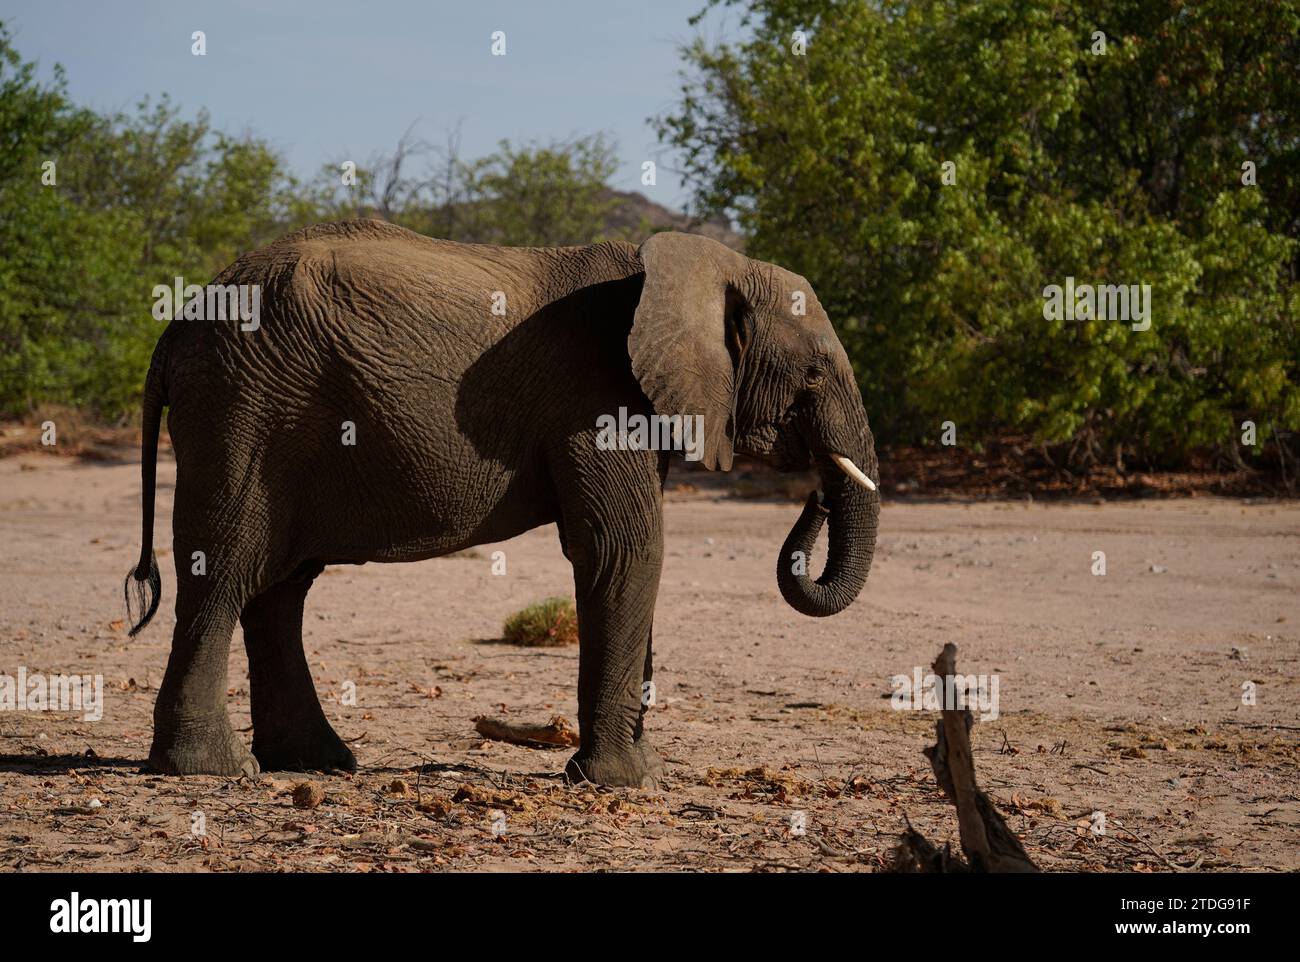 Profile portrait of desert elephant in Damaraland, Namibia Stock Photo